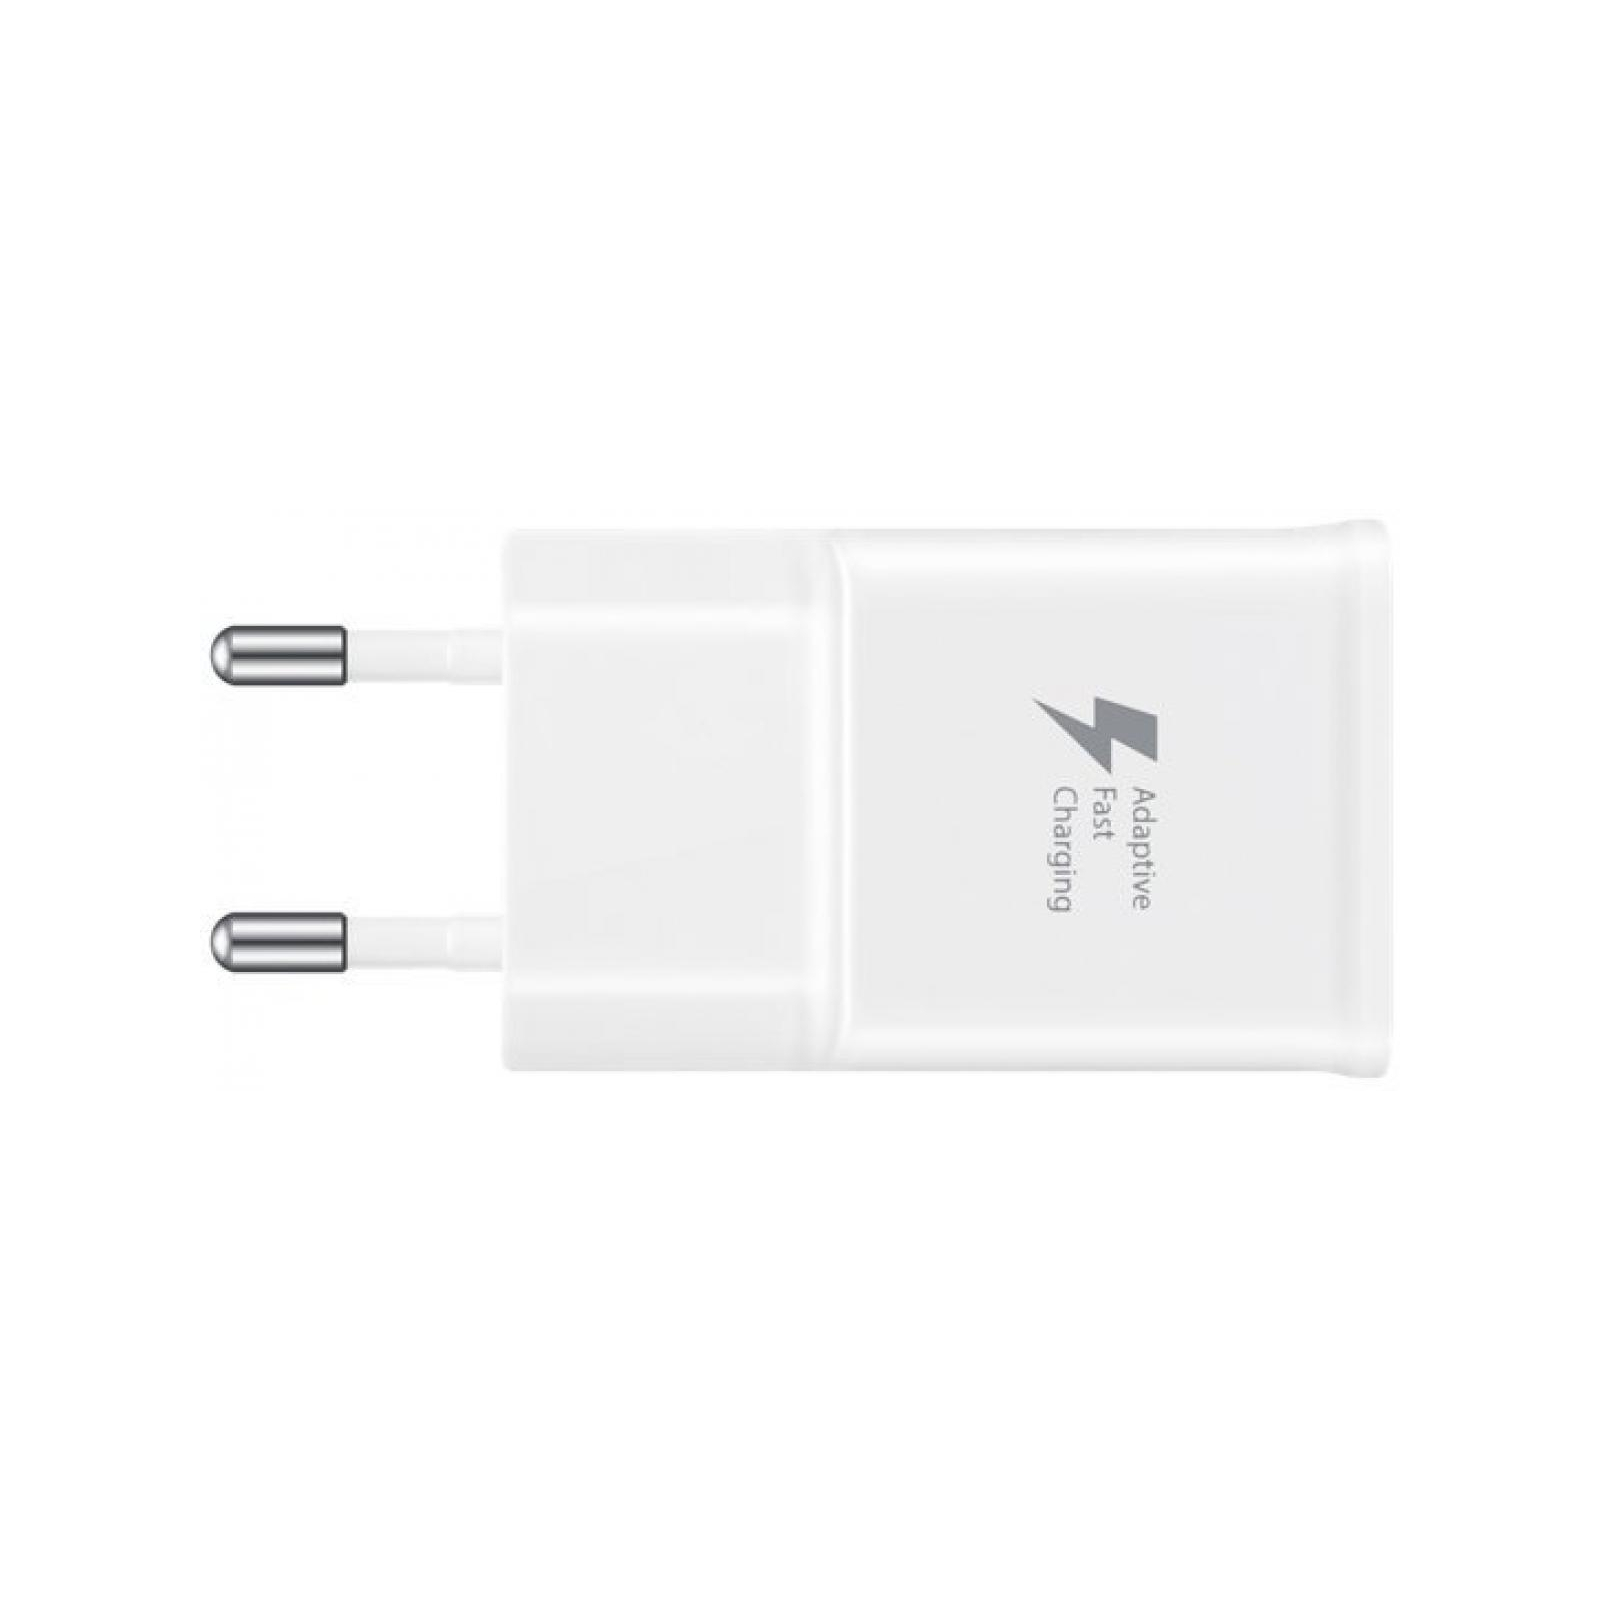 Зарядний пристрій Samsung 2A + Type-C Cable (Fast Charging) White (EP-TA20EWECGRU) зображення 3